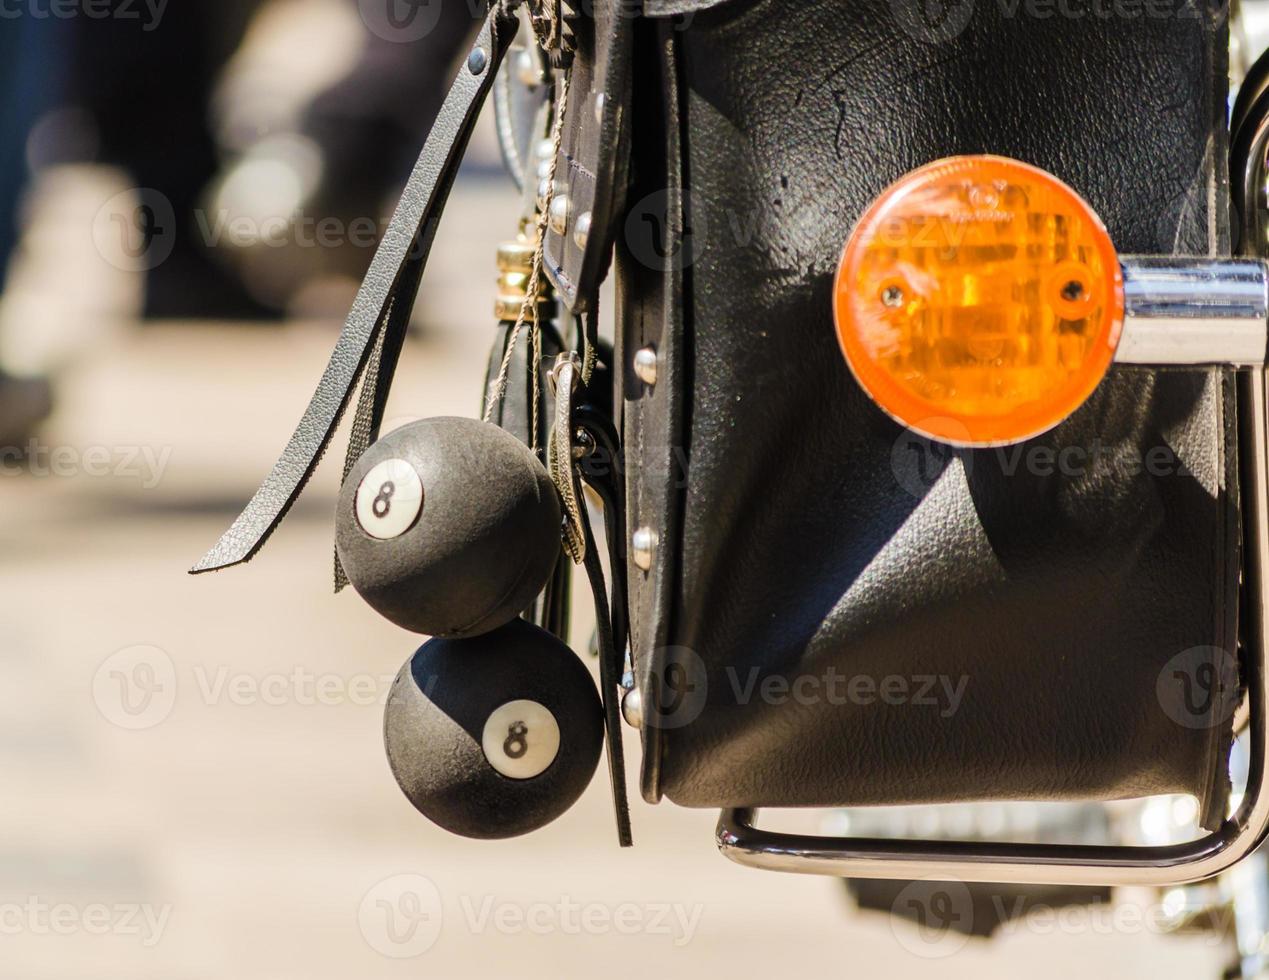 talisman bollar på en motorcyklist läderpåse närbild foto